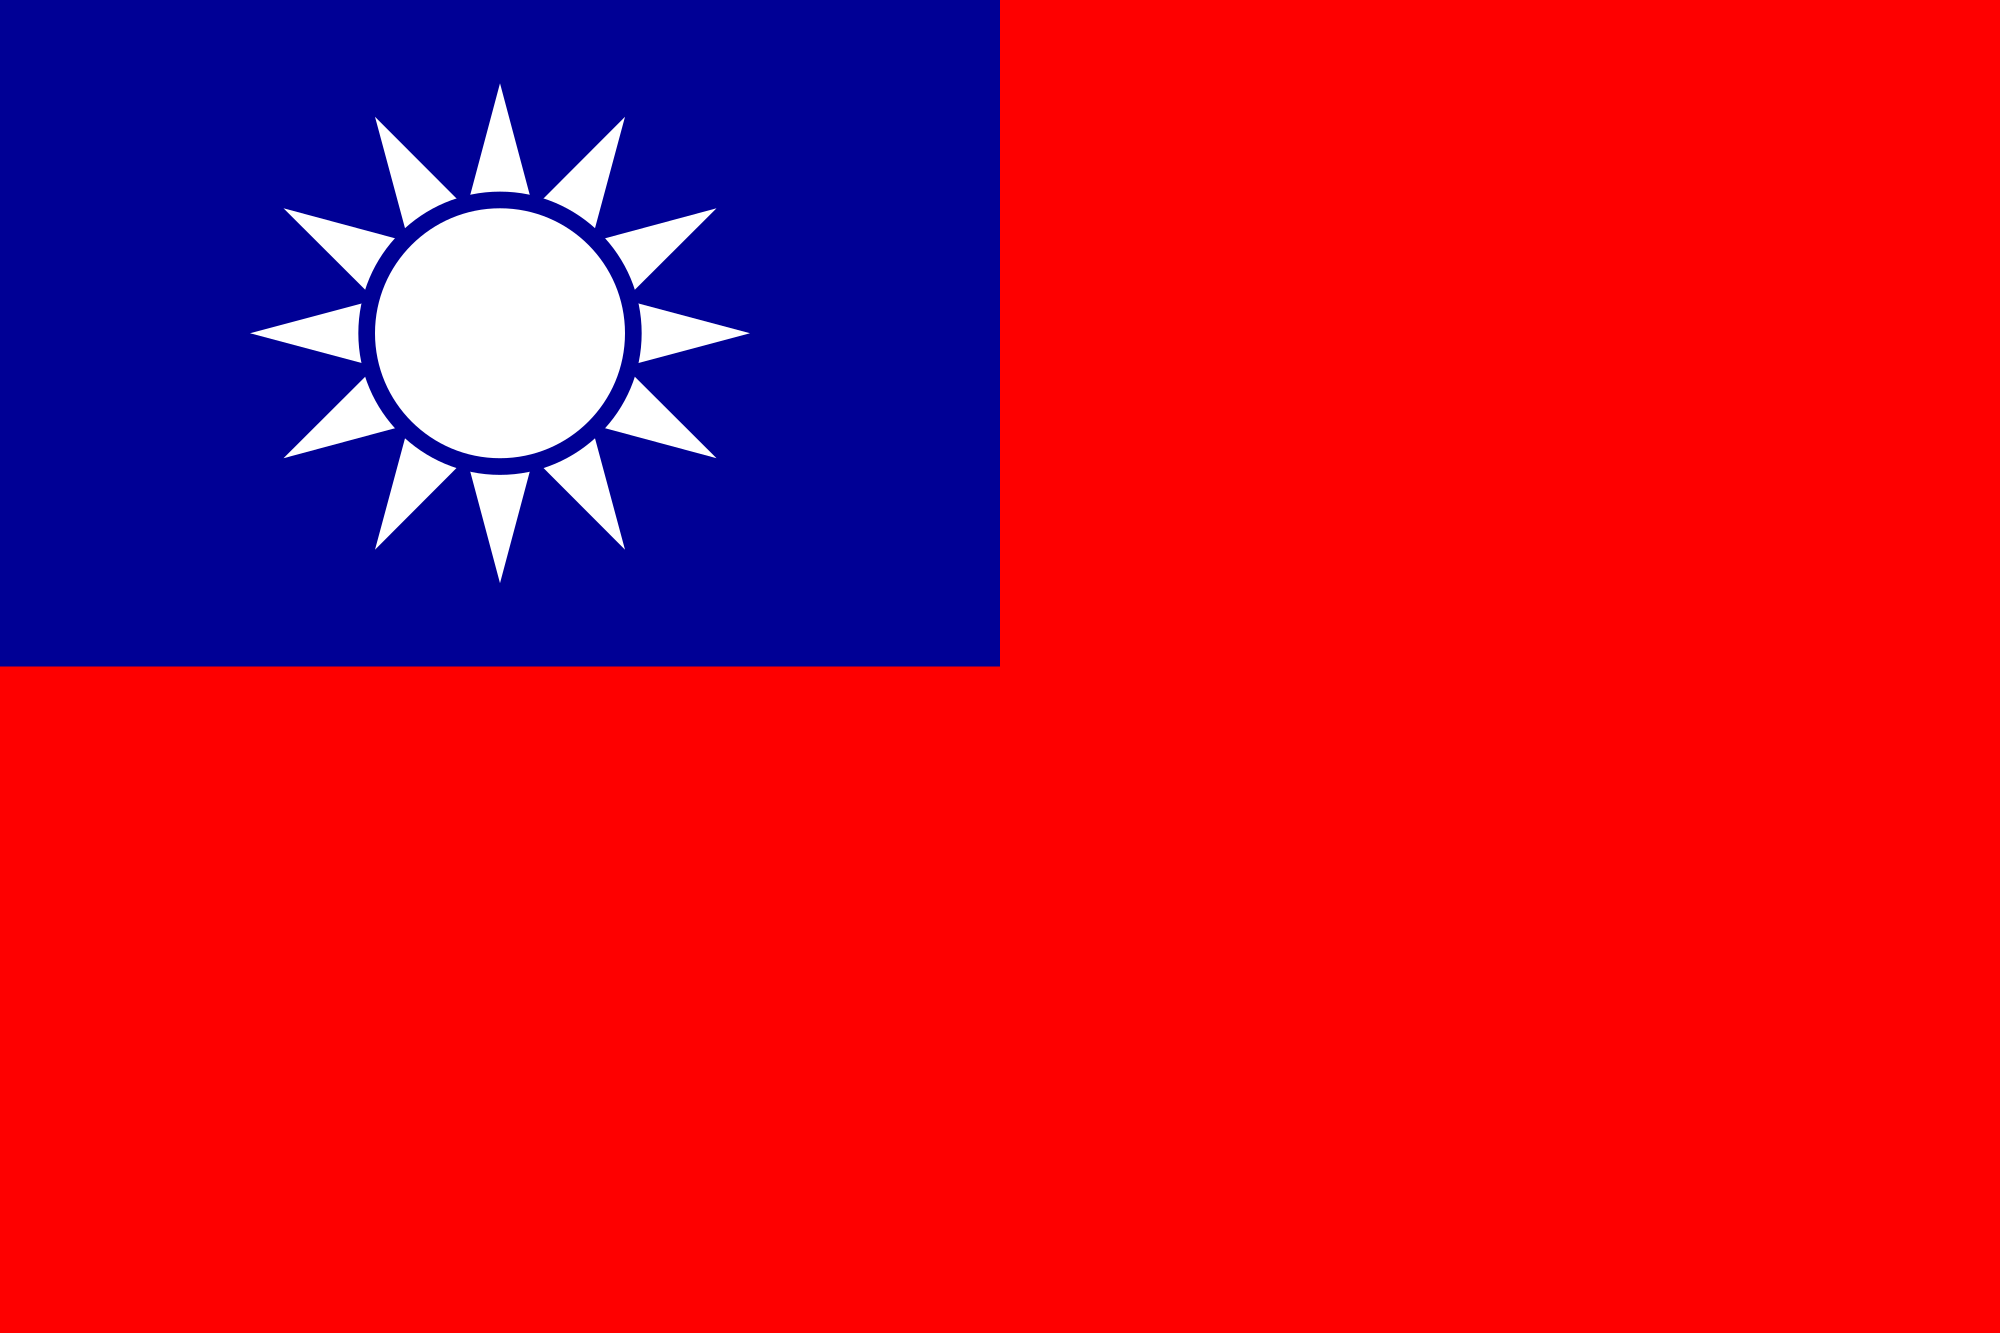 China Image Republic Of Taiwan Flag HD Wallpaper And